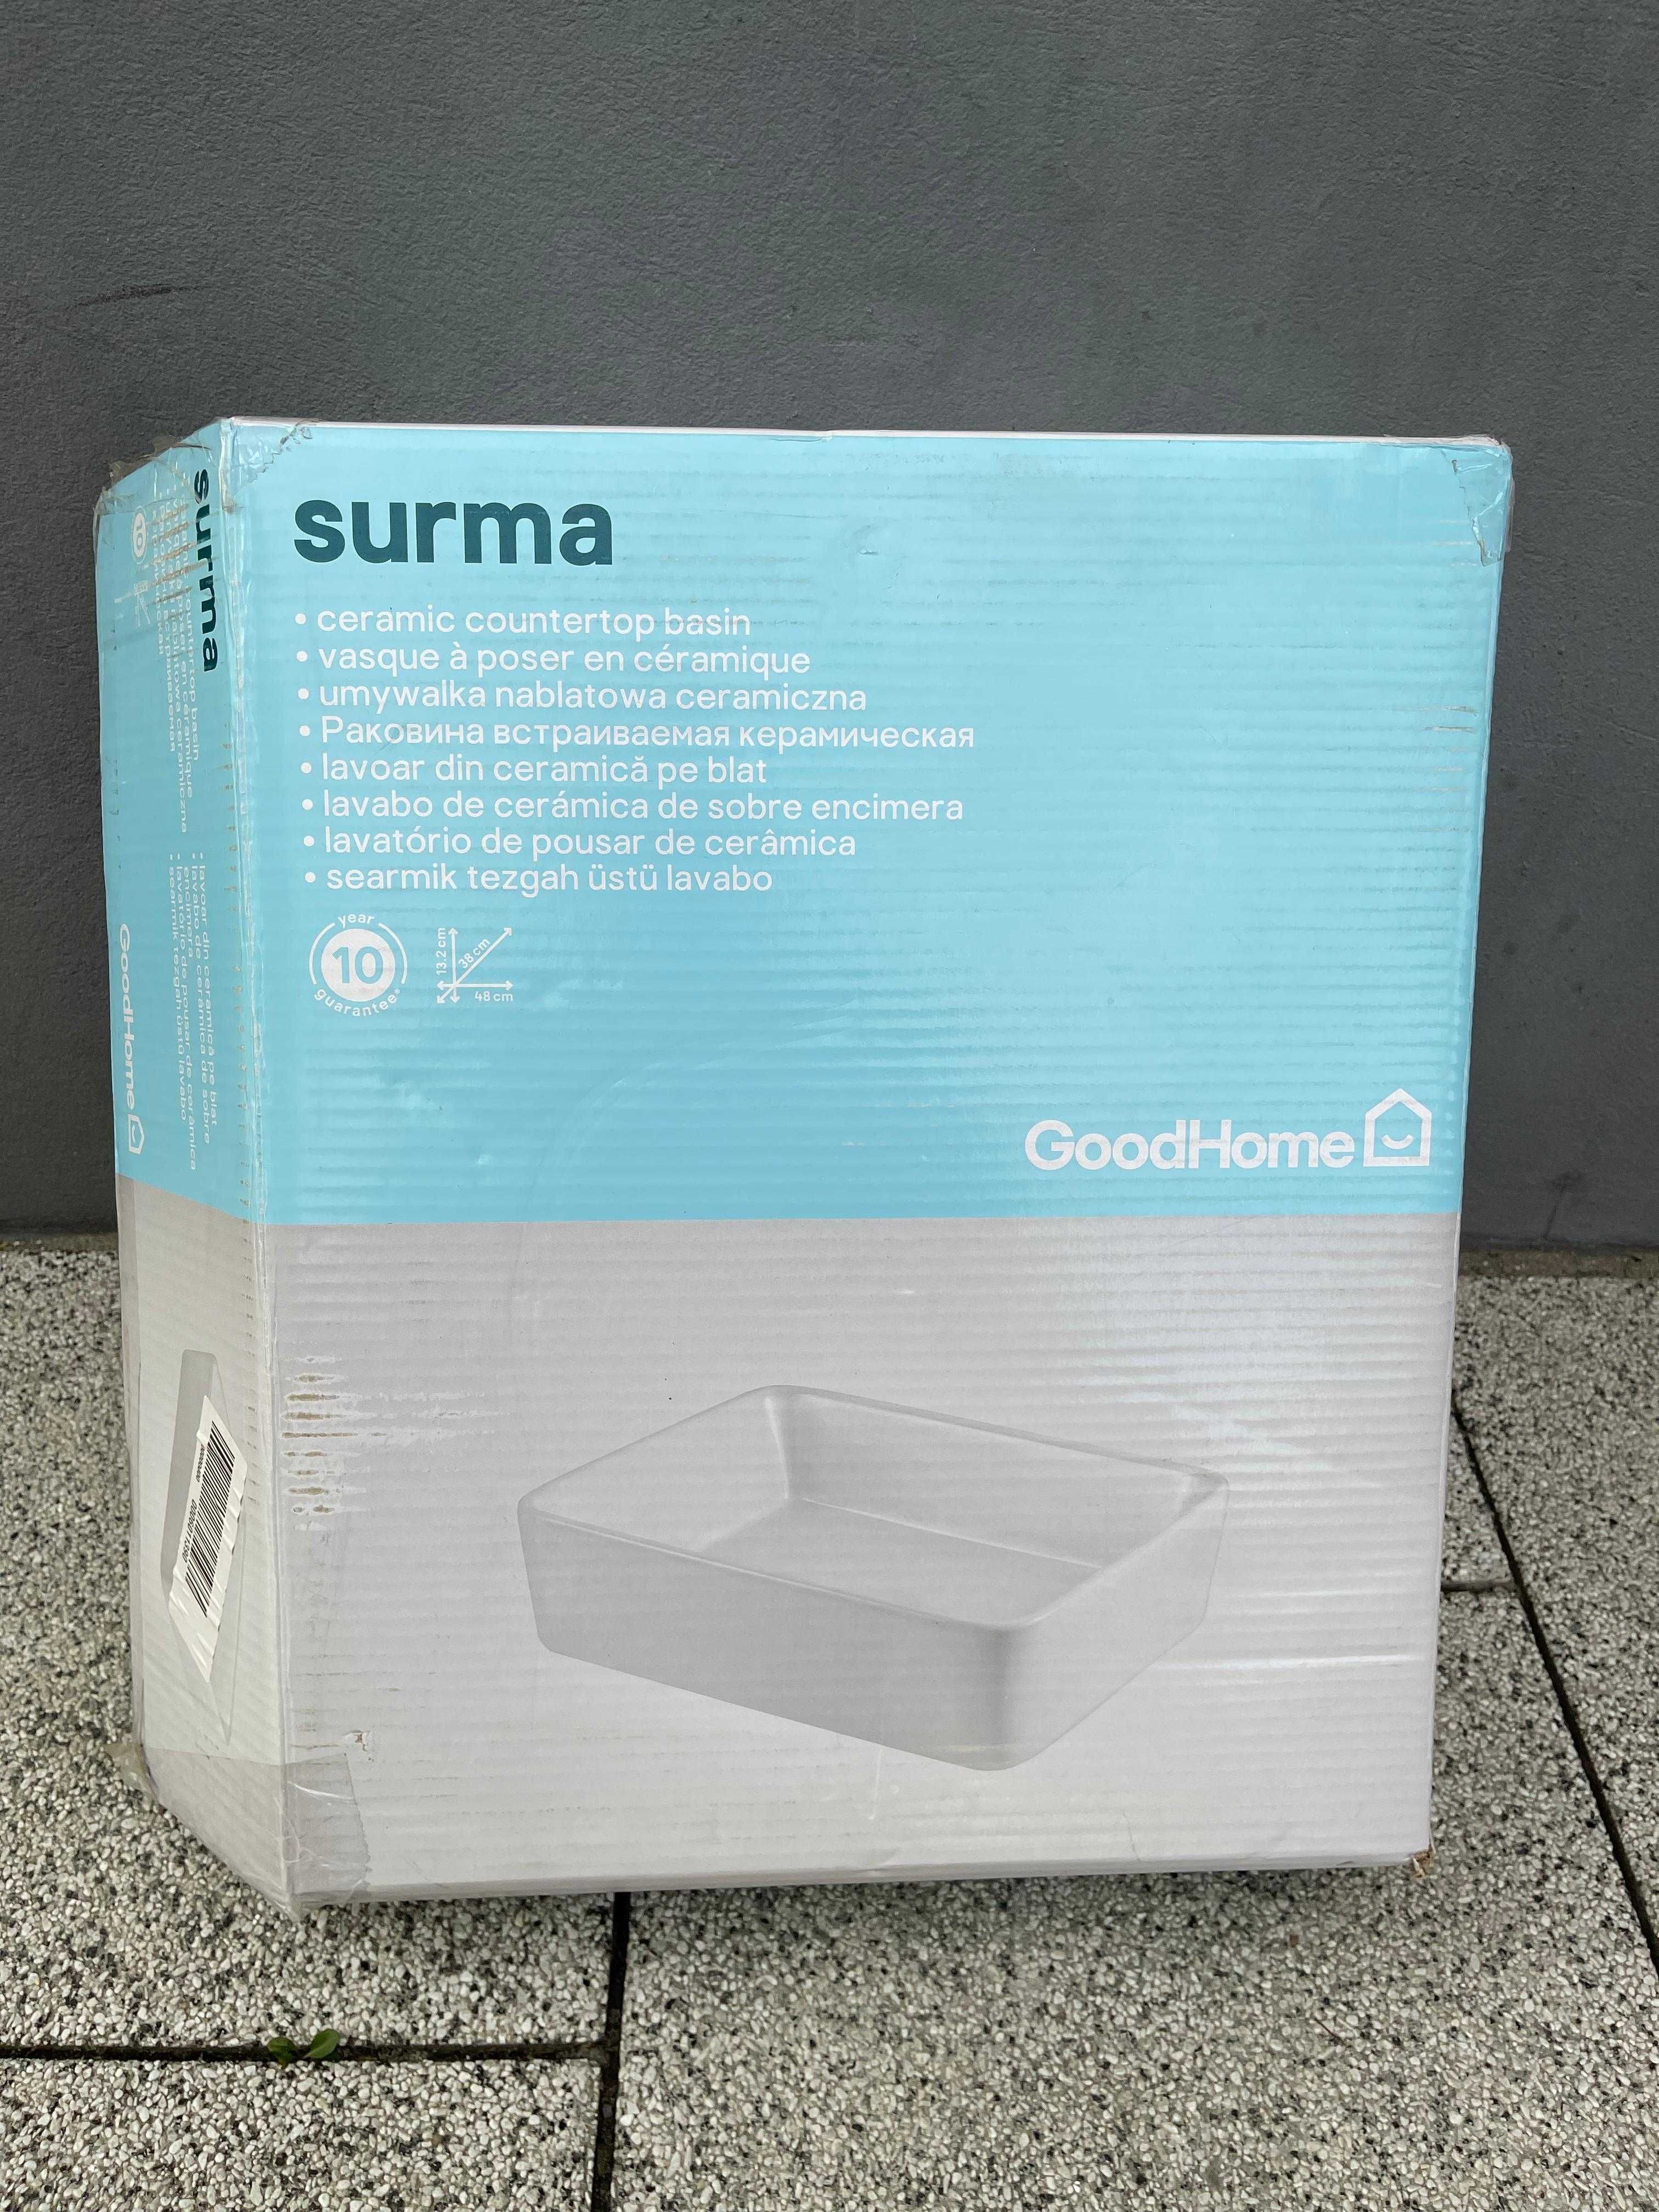 Umywalka nablatowa ceramiczna Good Home Surma 48x38 cm biała (Castor.)